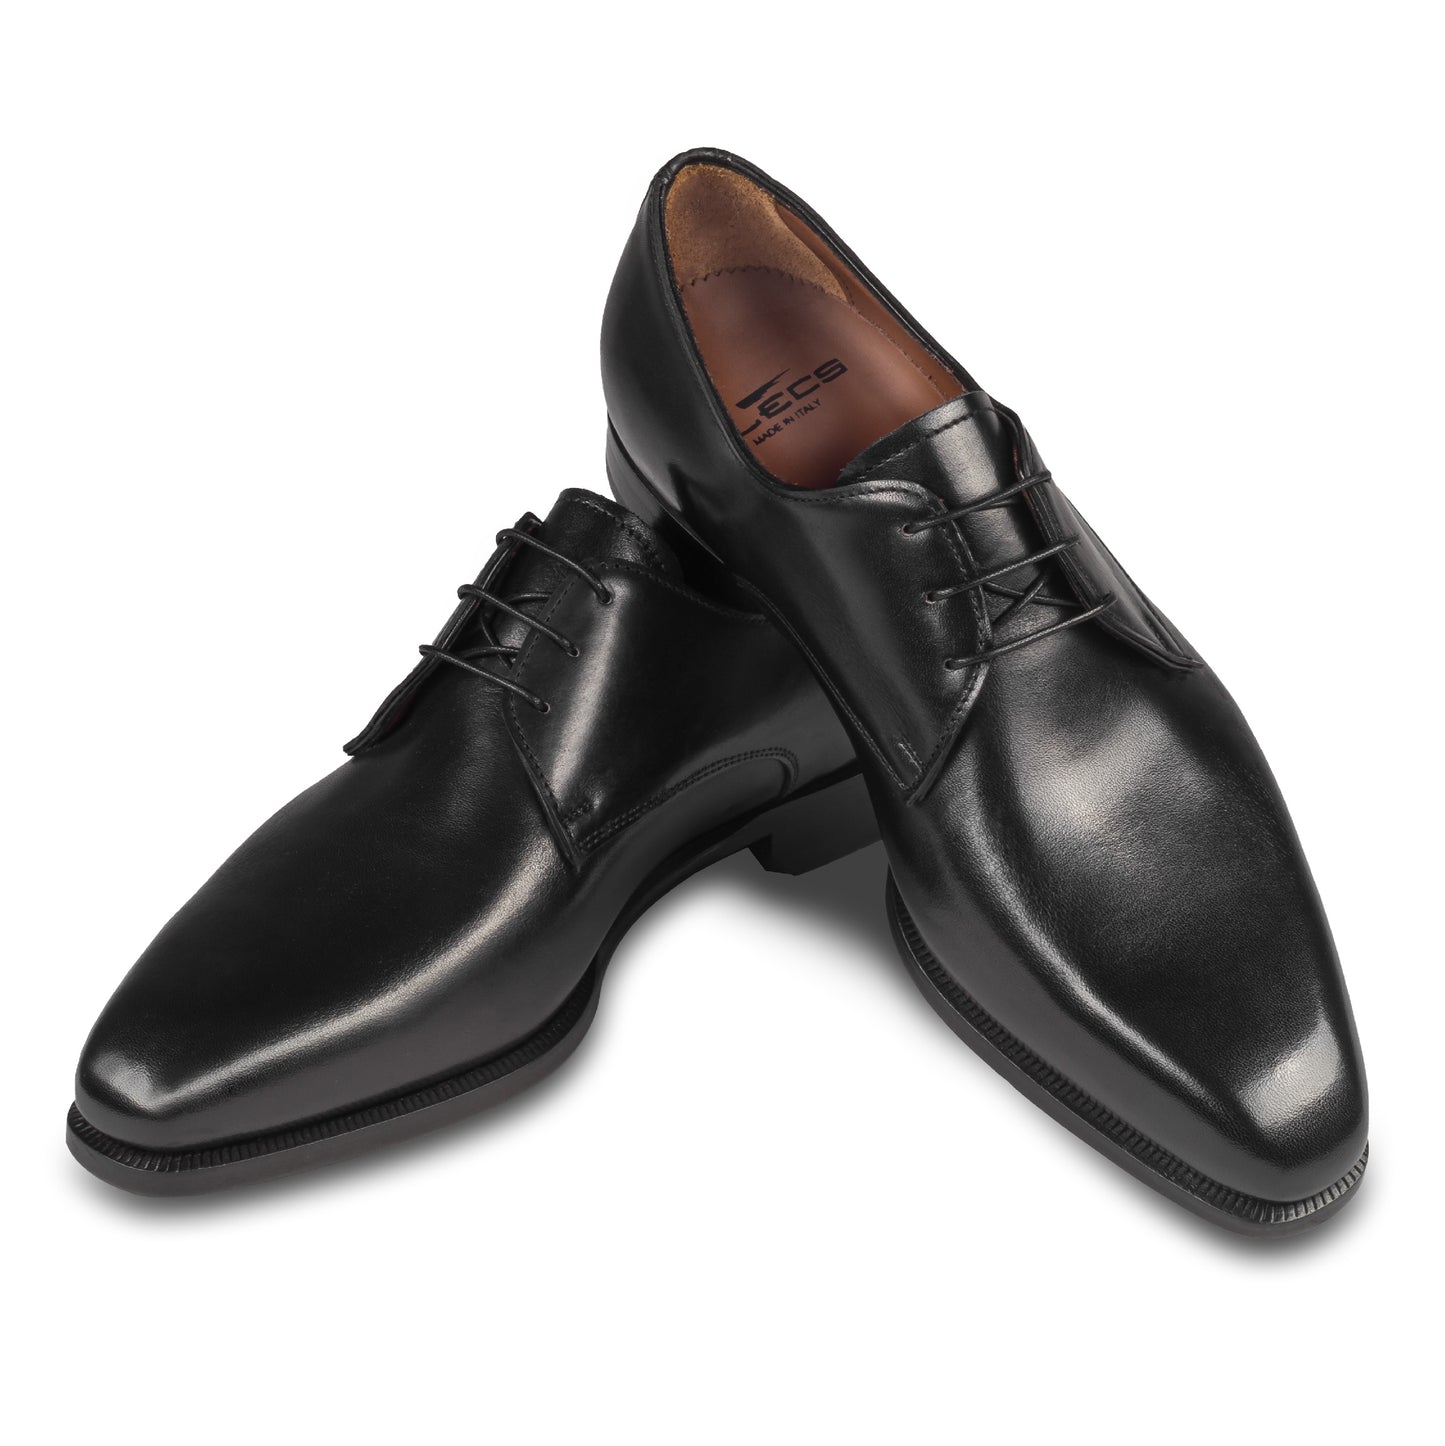 Anzugschuhe von Flecs, Plain Derby Schnürer in schwarz, durchgenäht. Paarweise Ansicht Schuhe überkreuzt aufgestellt. Bei Sisento.